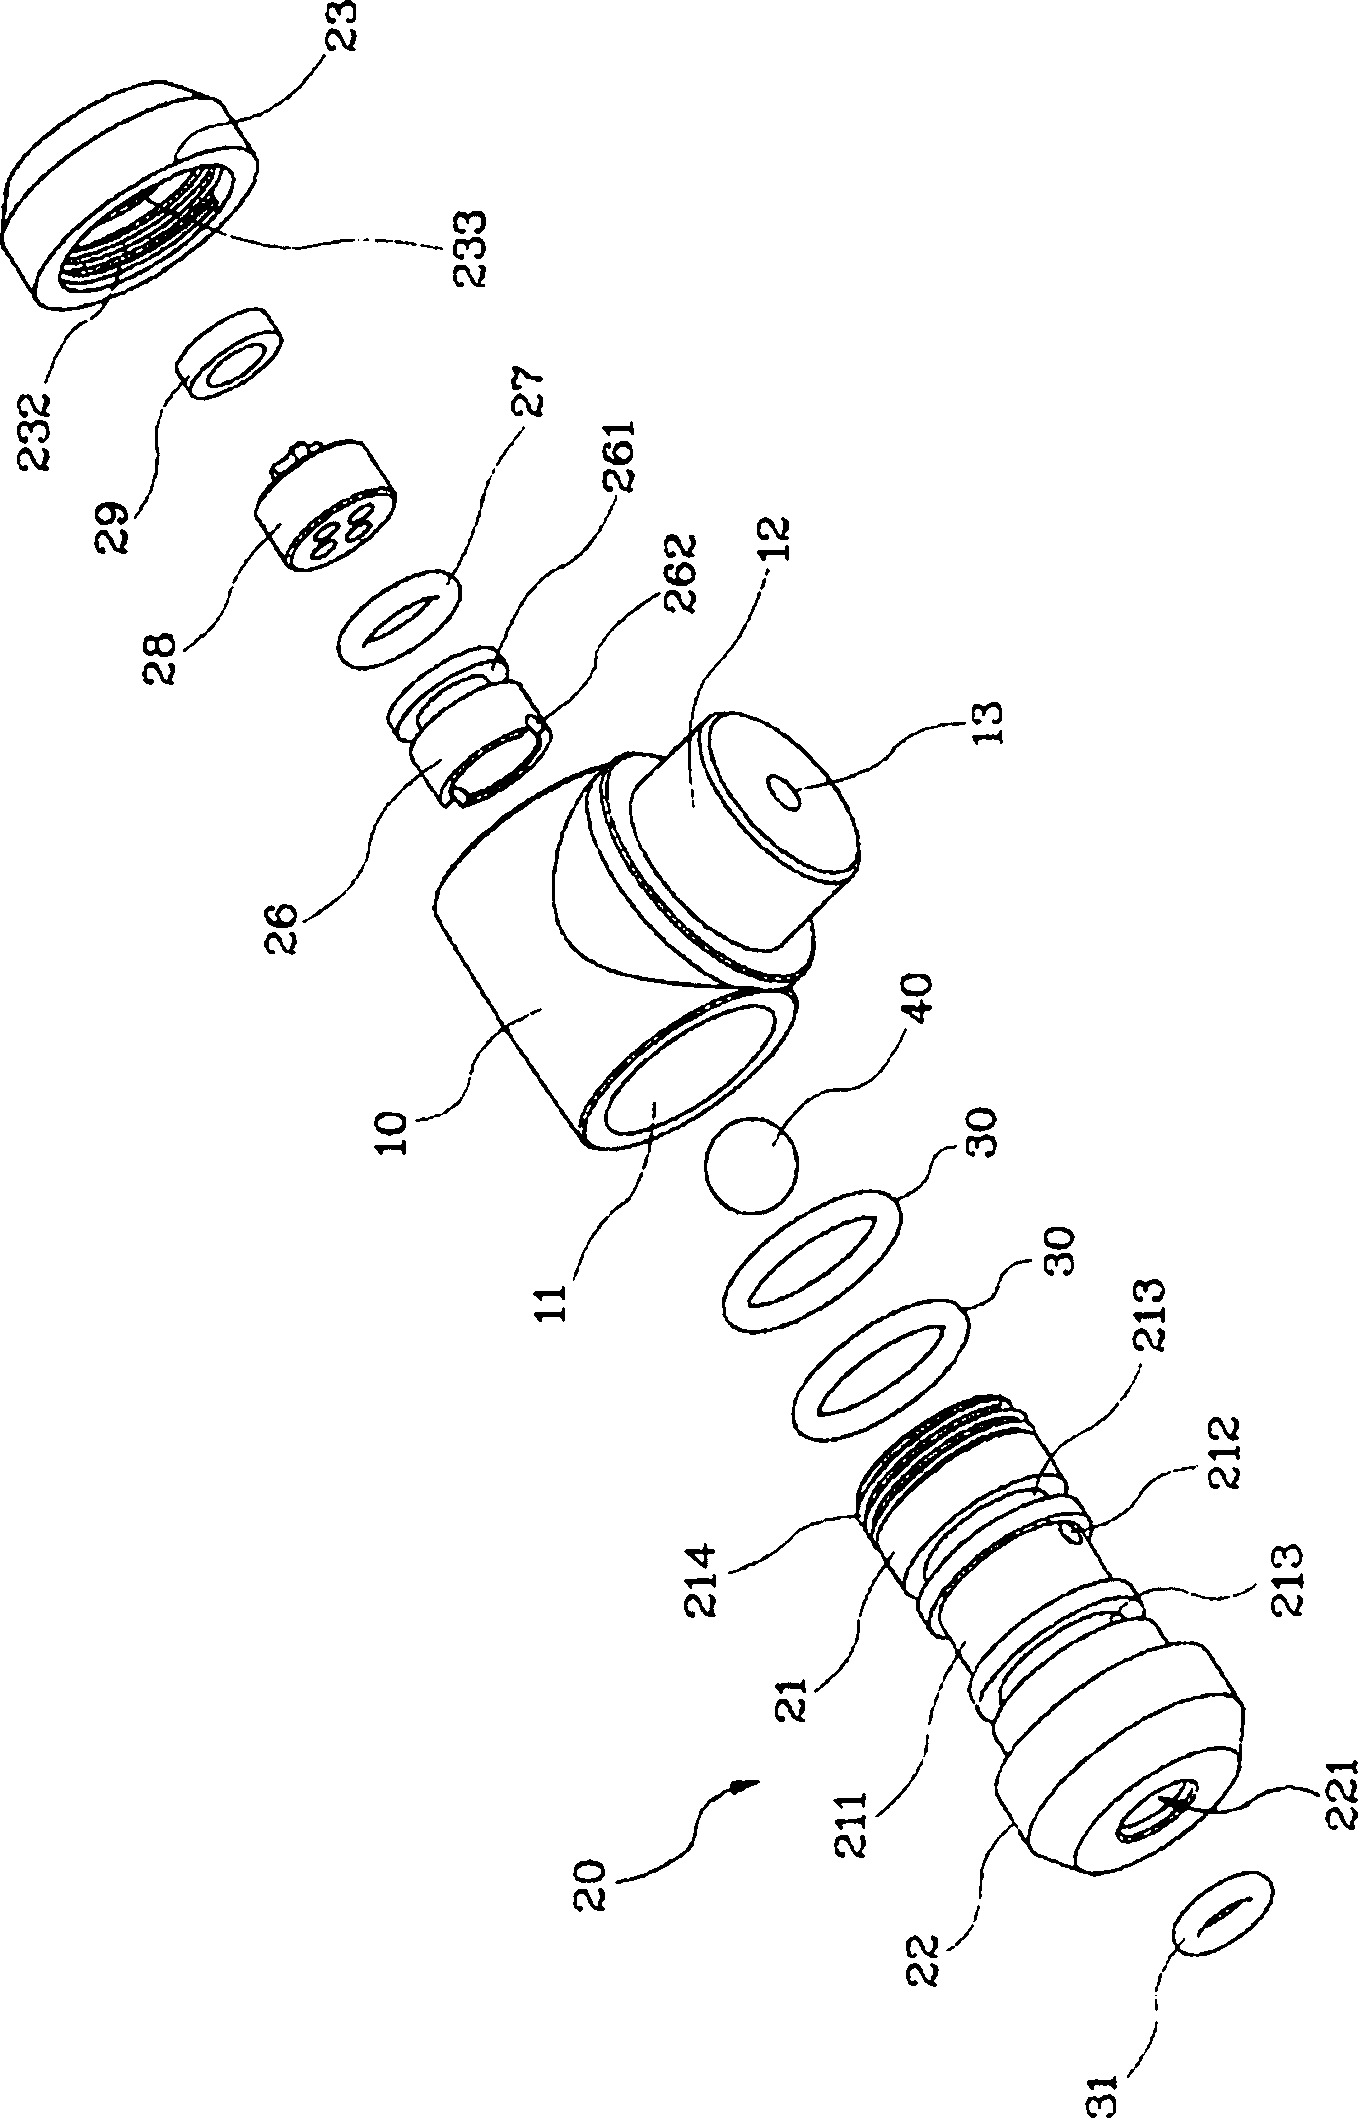 Schrader valve and Presta valve combined valve head